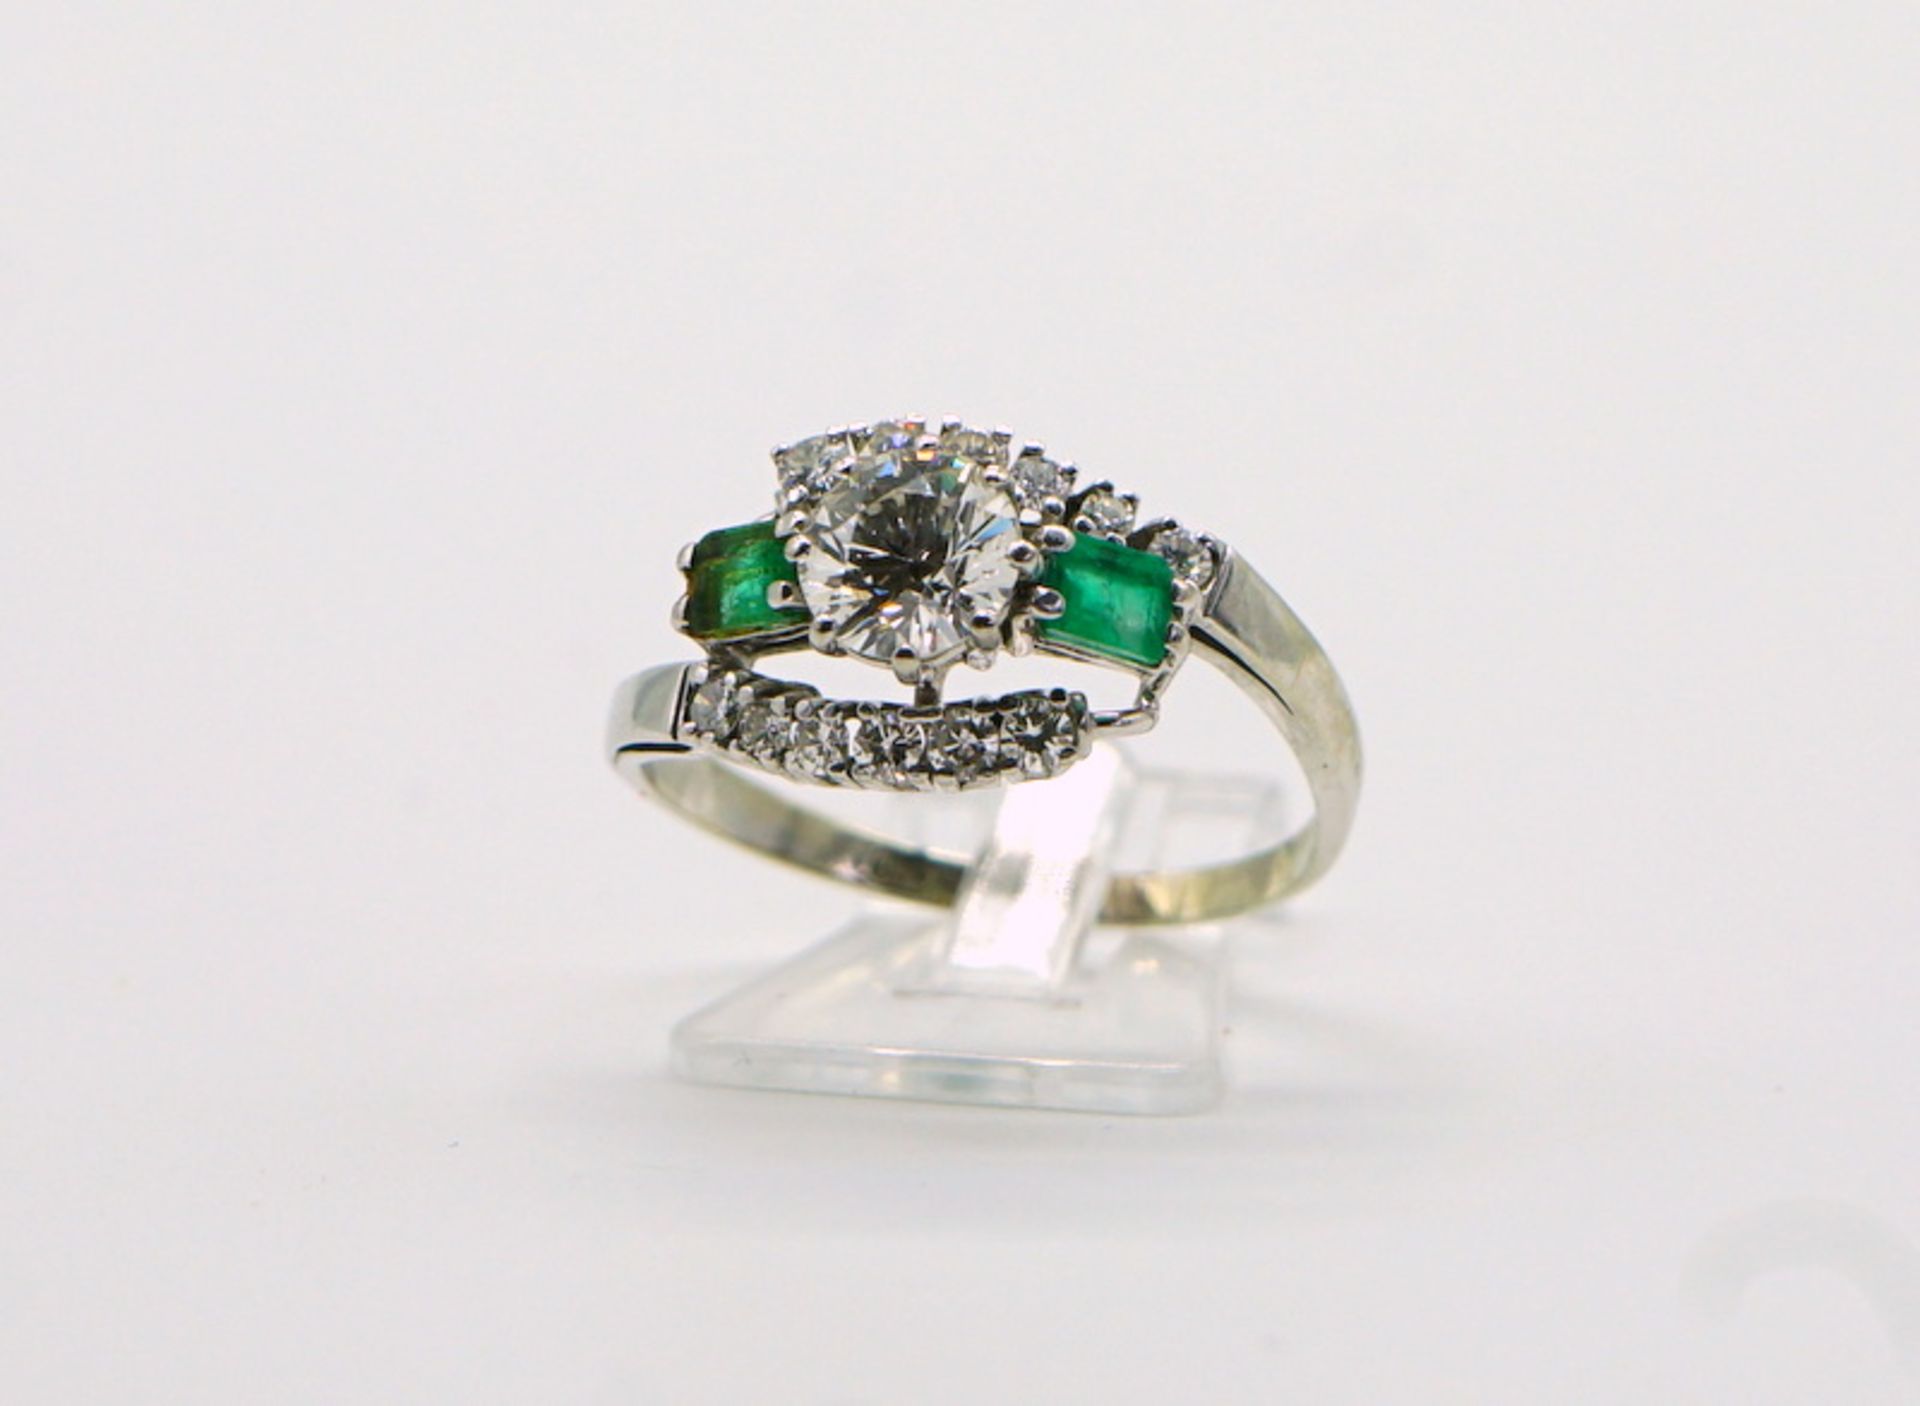 Eigenwilliger Brillant-Smaragd-Ring, zus. über 1ct Brillanten, 750 GG - Image 4 of 5